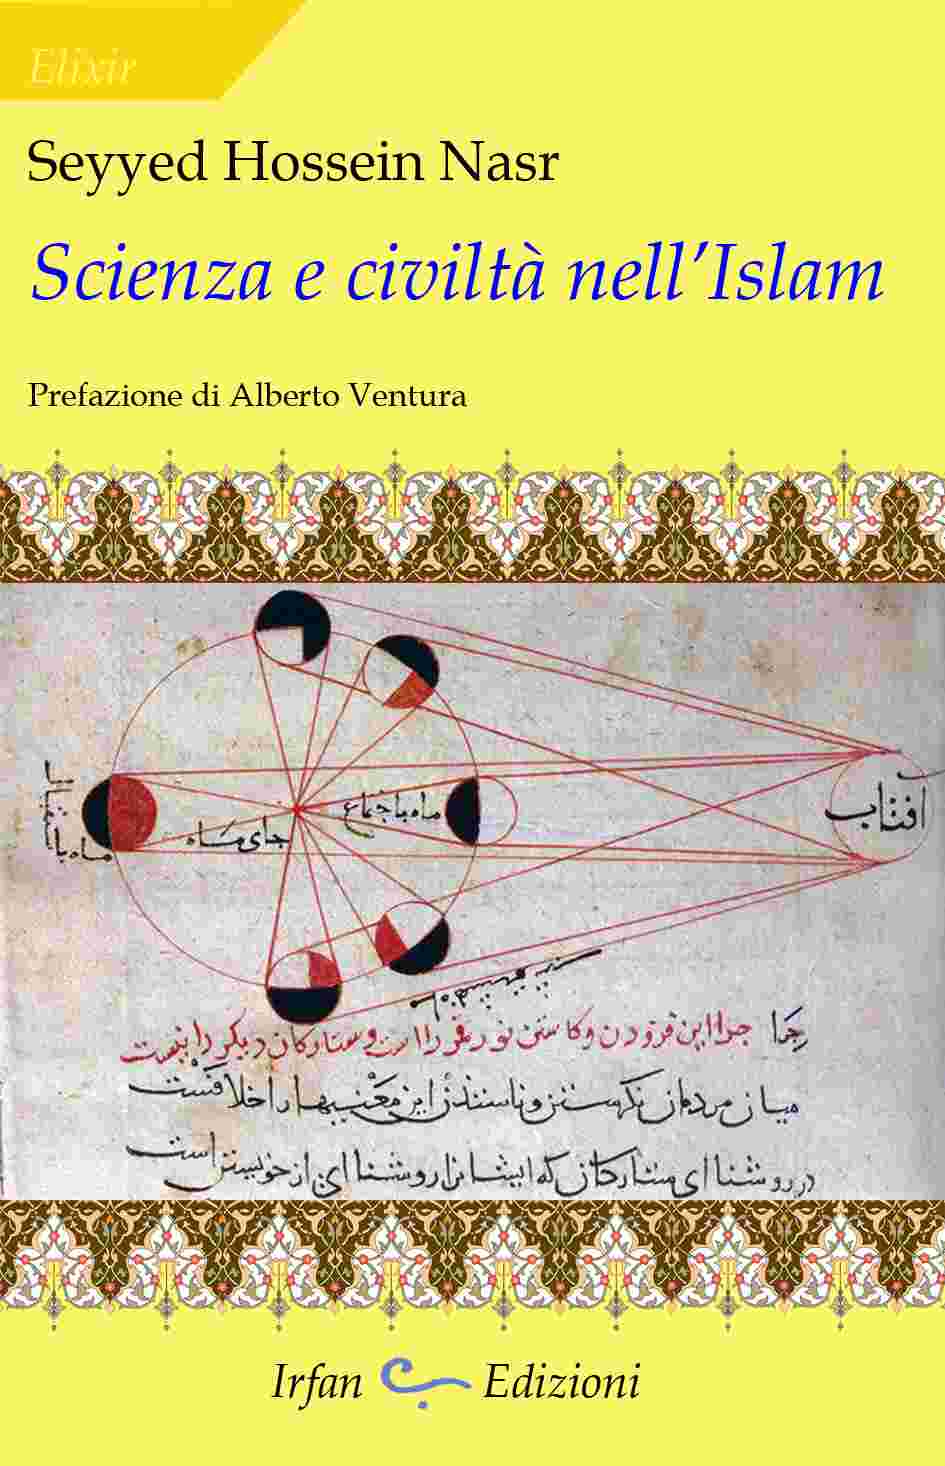 Roma Eventi Culturali. Alla libreria Aseq presentazione libro: Scienza e Civiltà nell’Islam di Seyyed Hossein Nasr. 